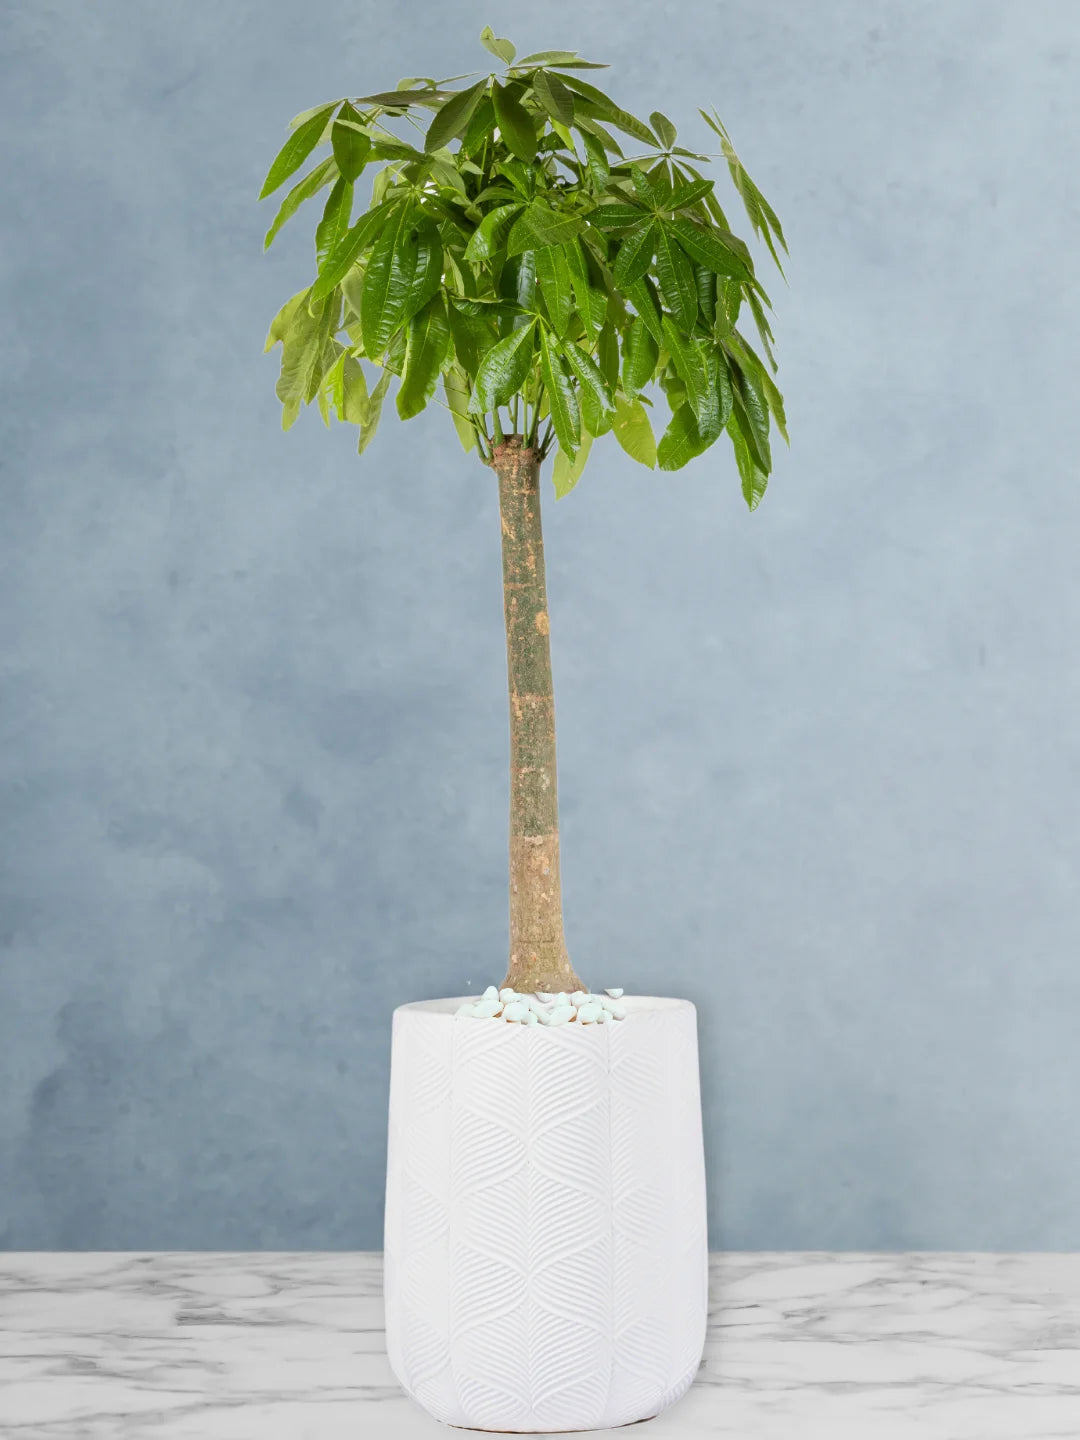 XL Pachira Aquatica: Your Feng Shui Money Tree